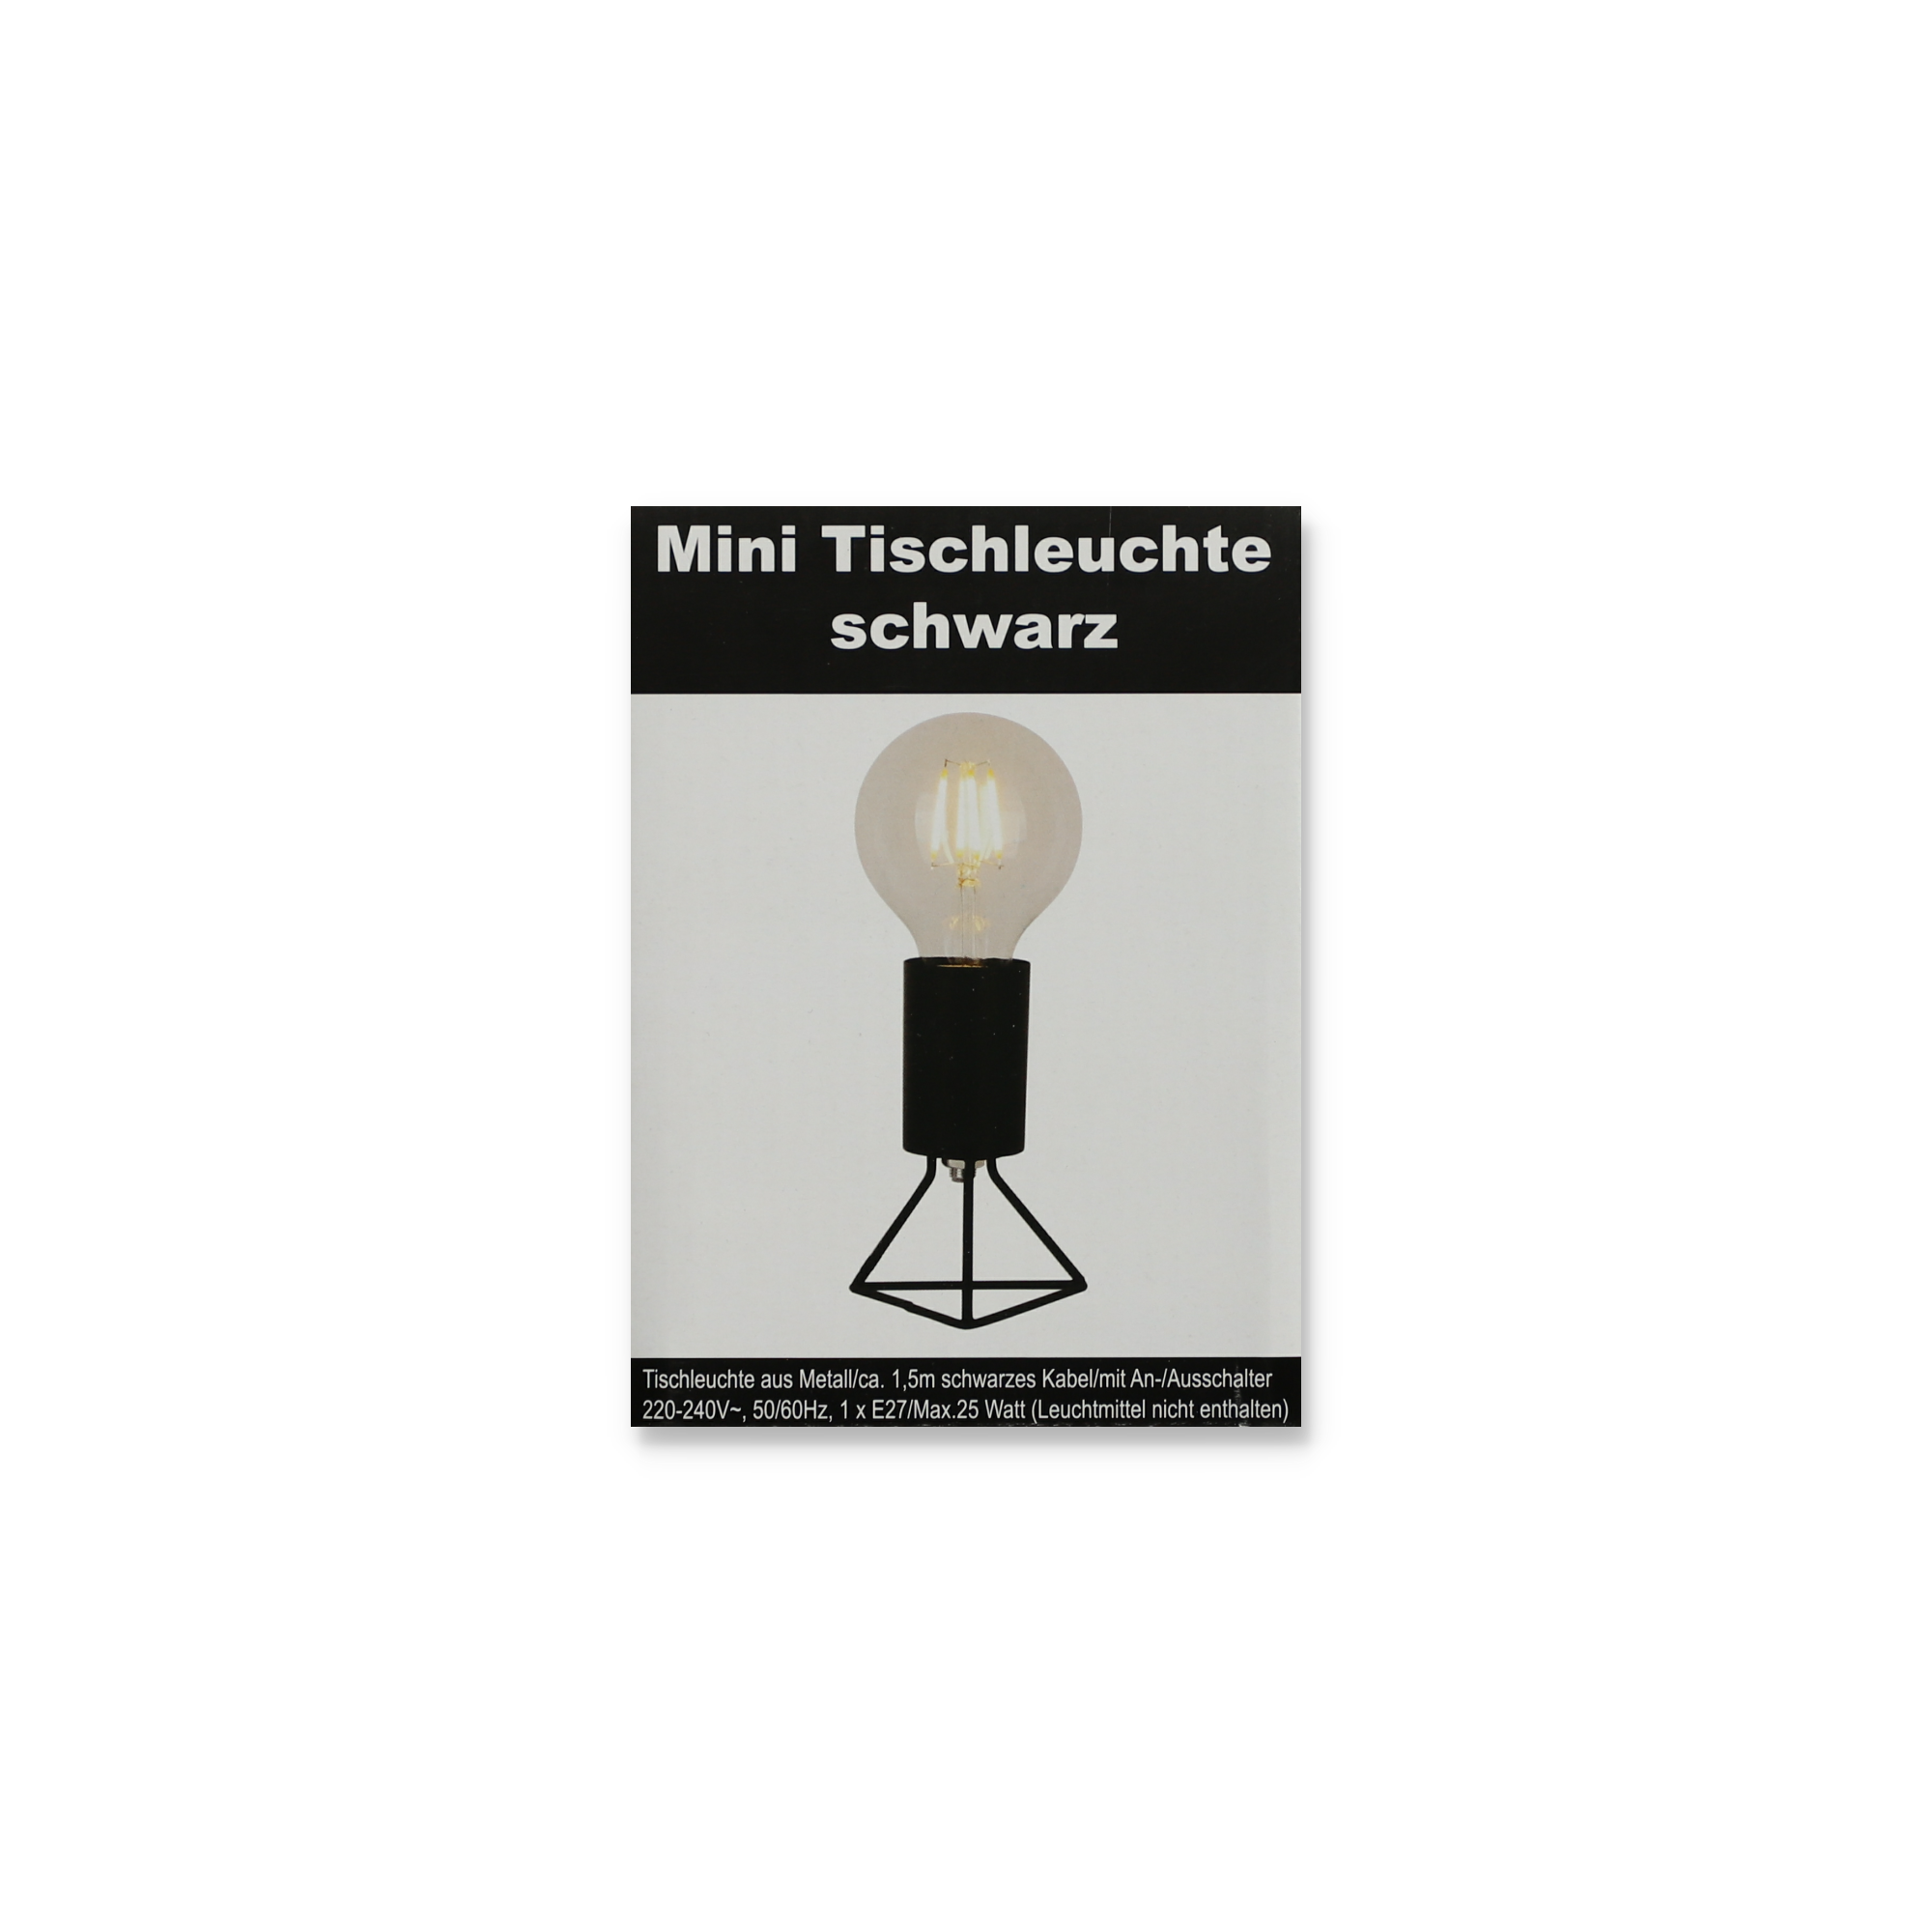 Tischleuchte 'Mini' schwarz 8,8 x 12,5 cm + product picture